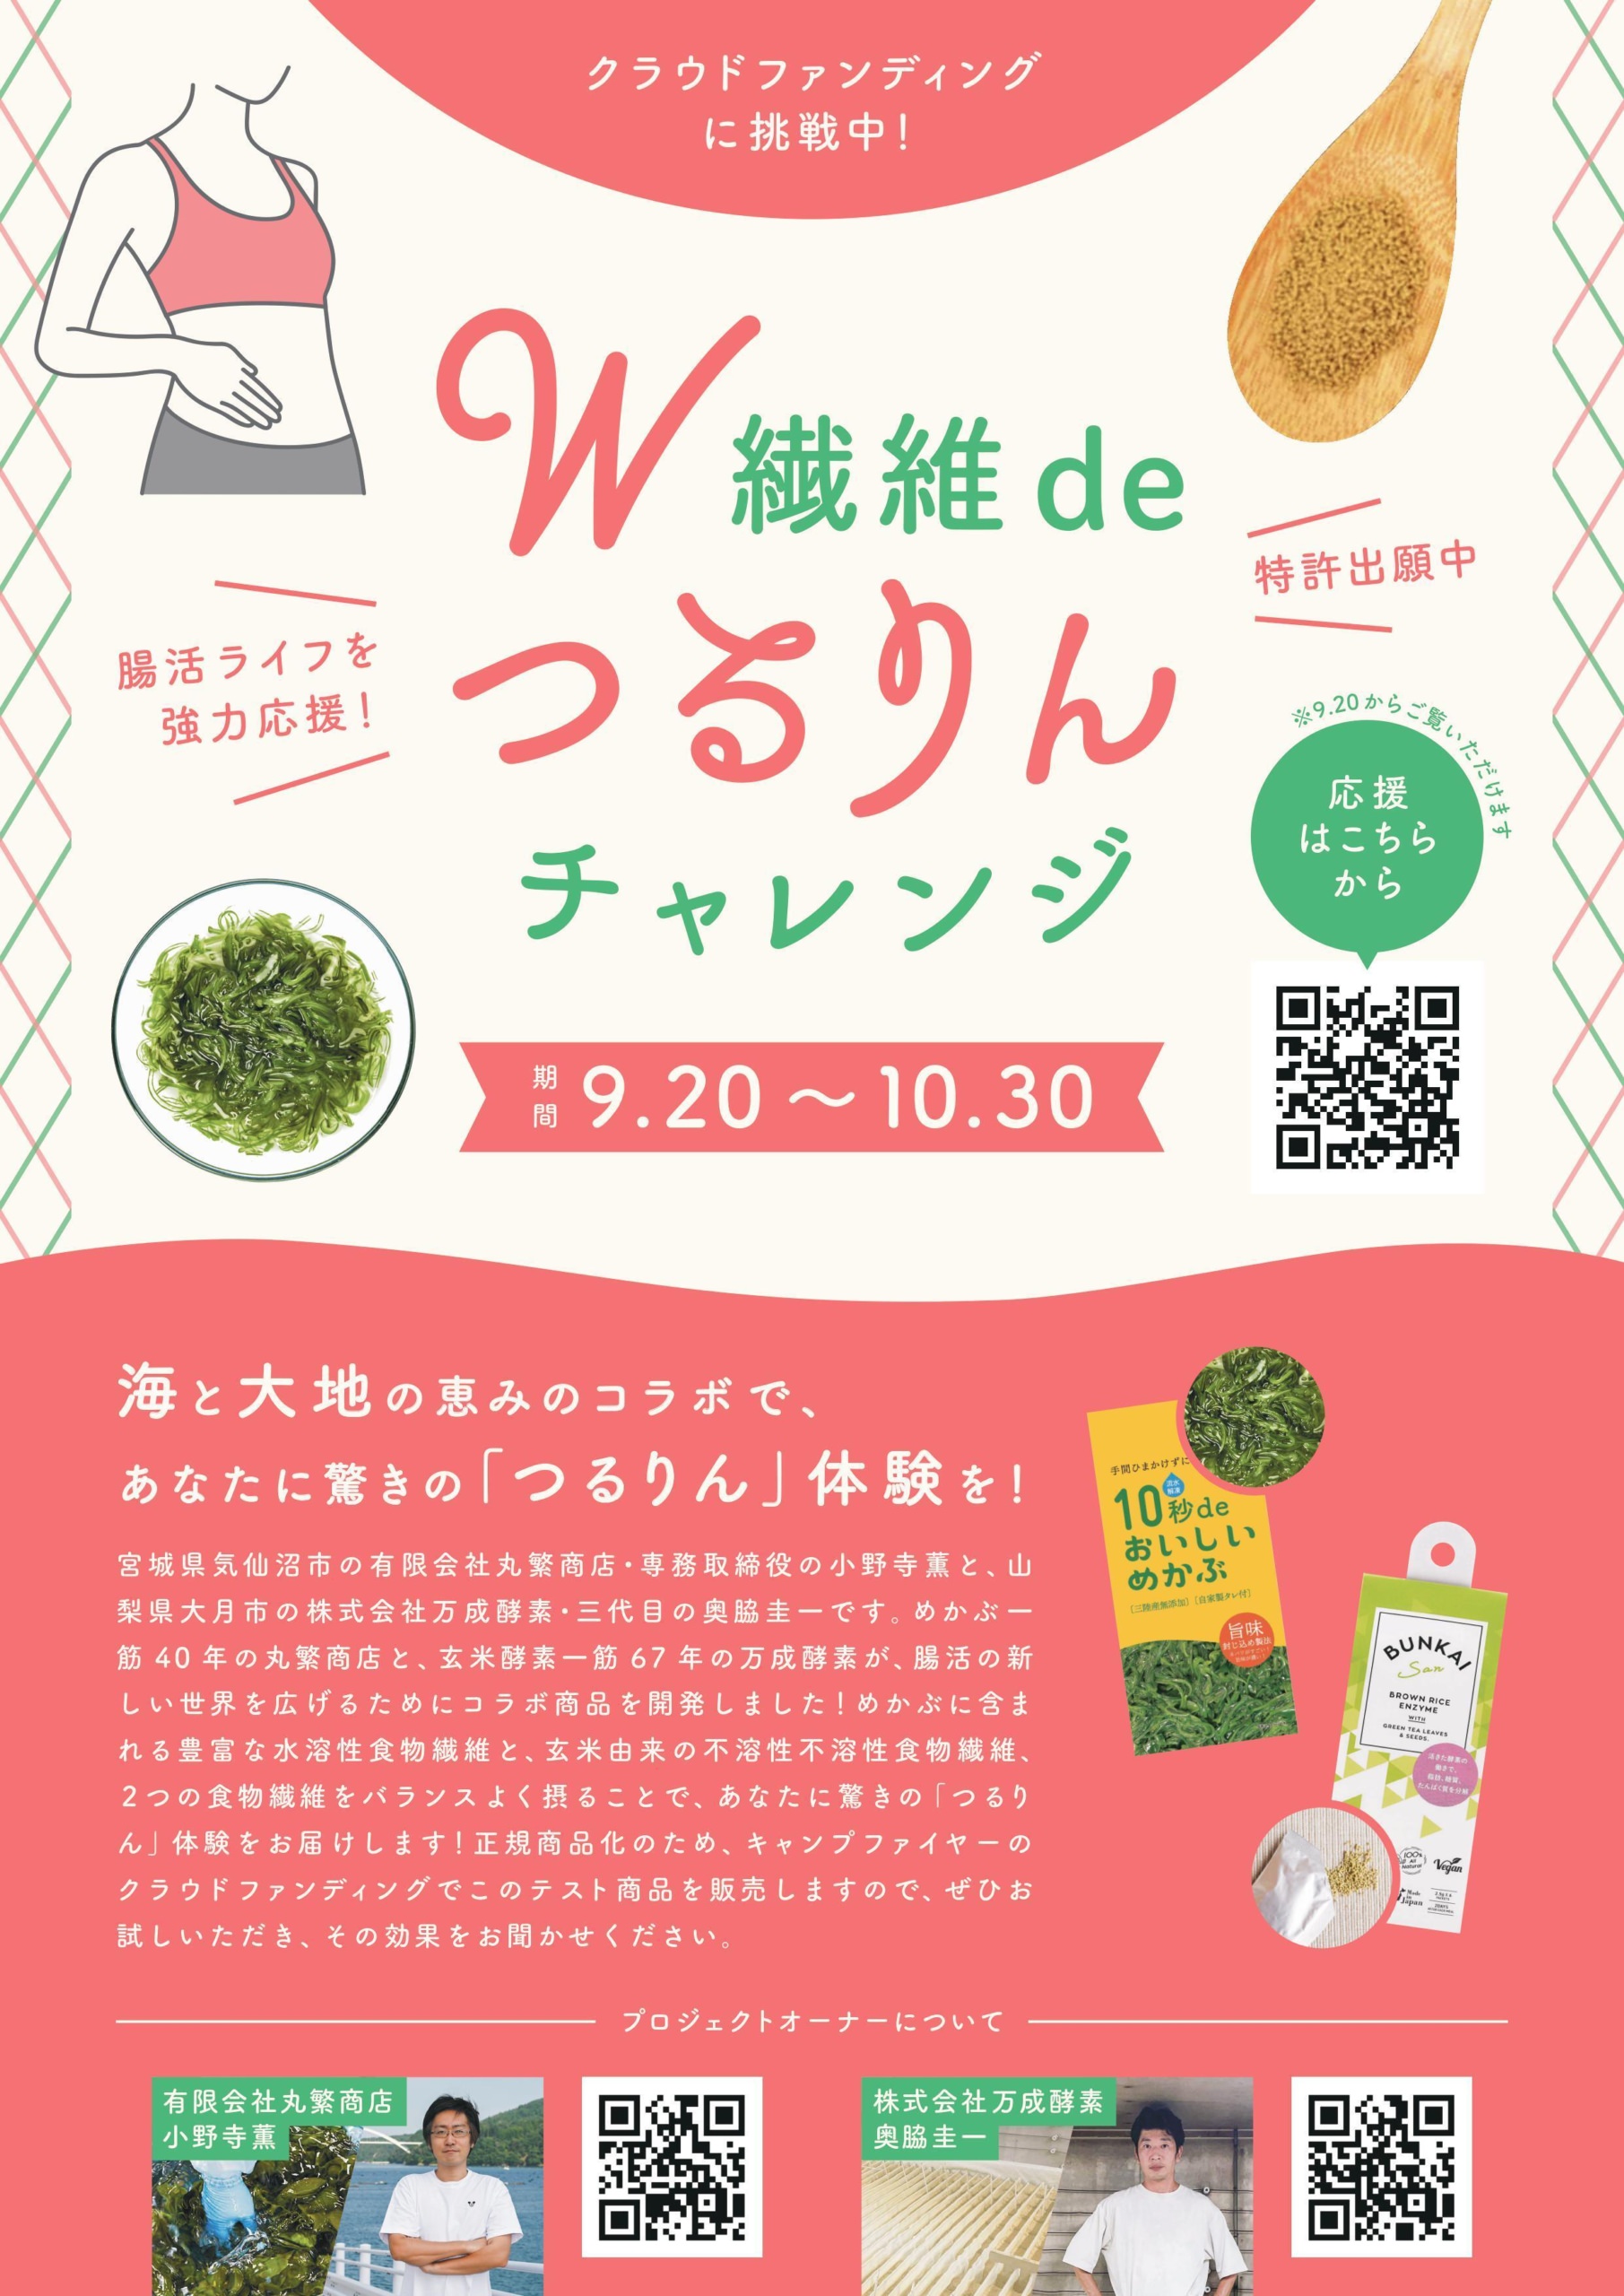 ついに名古屋にも展開を開始！
初の常設キッチンカー『コロッケのころっ家　大須KC店』が
2021年9月19日(日)にオープン！